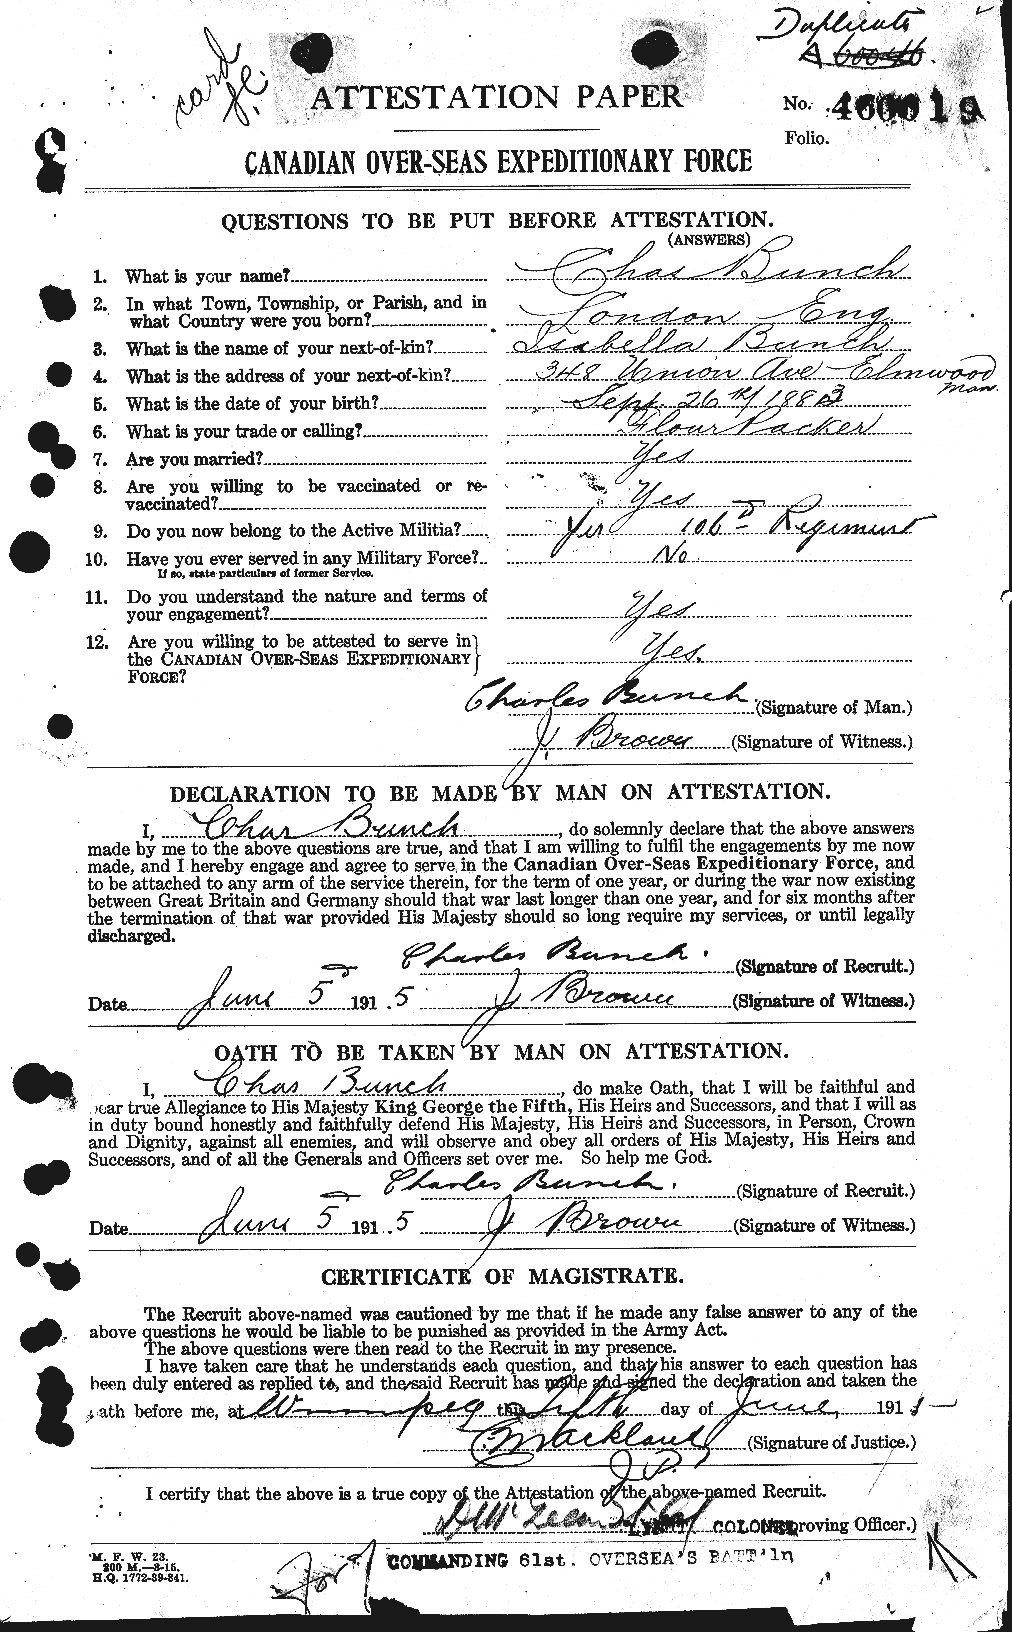 Dossiers du Personnel de la Première Guerre mondiale - CEC 270349a